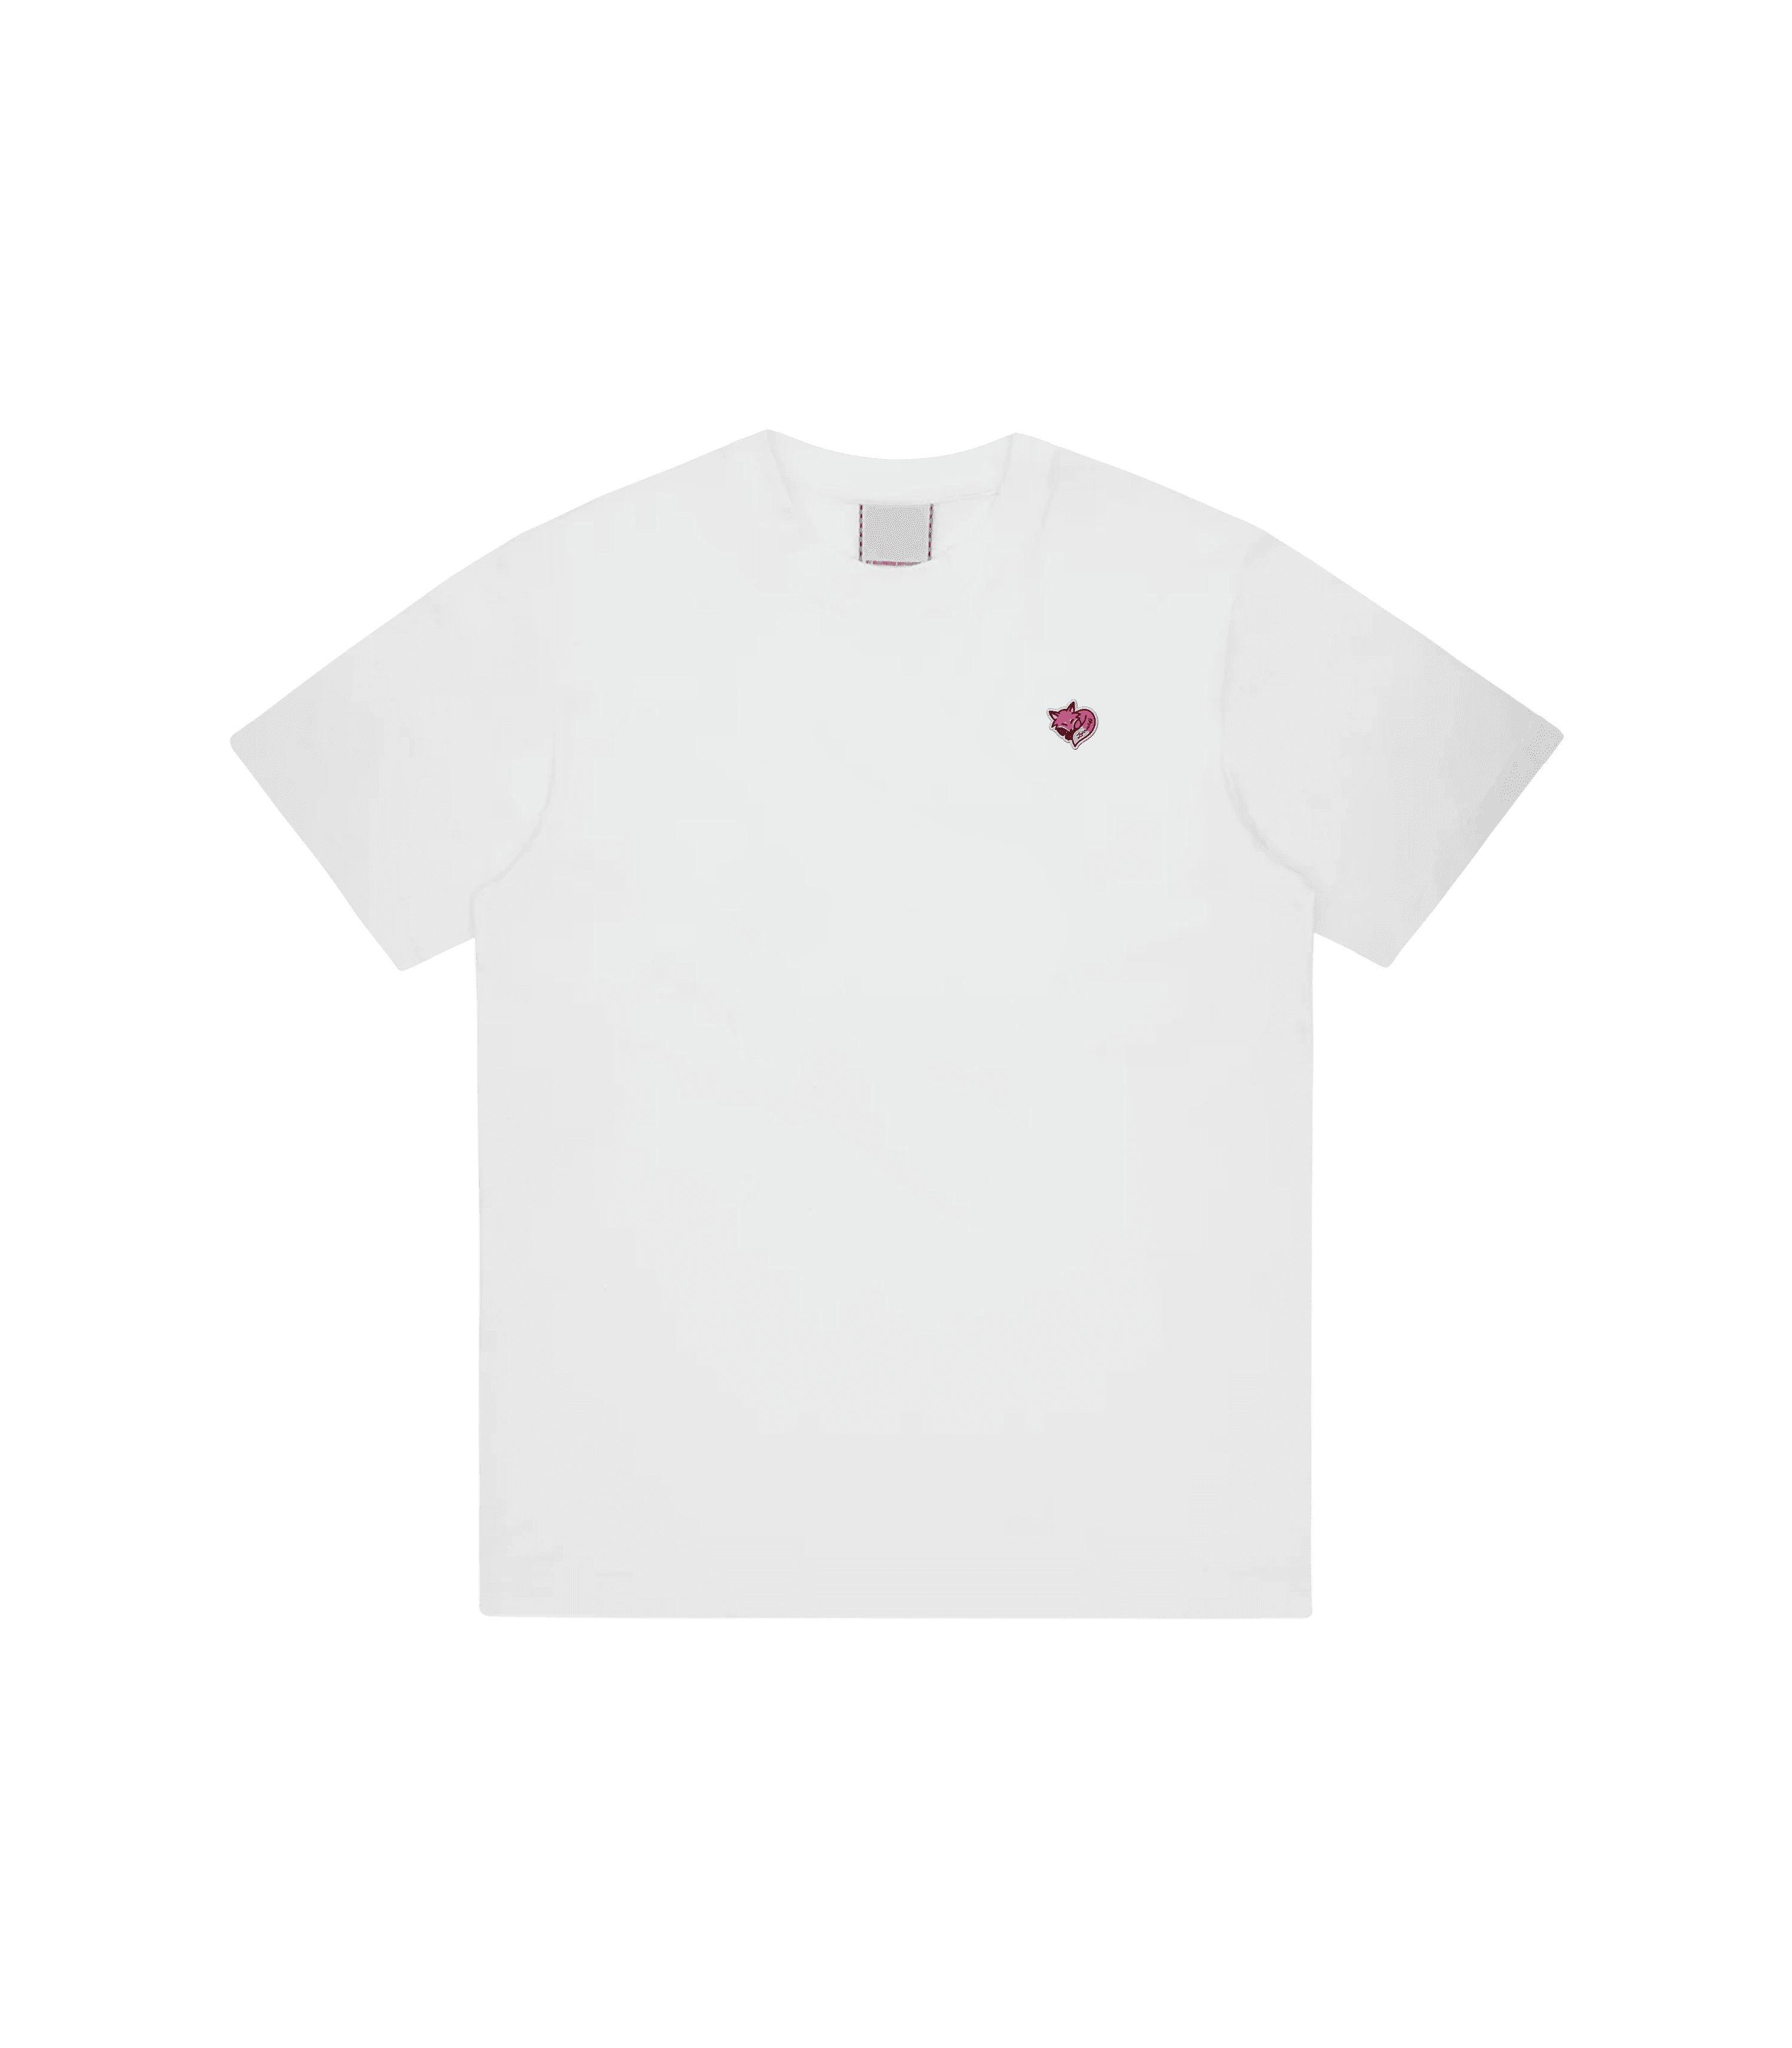 Zorro Stuff T-Shirts S / White Cupid White Tee